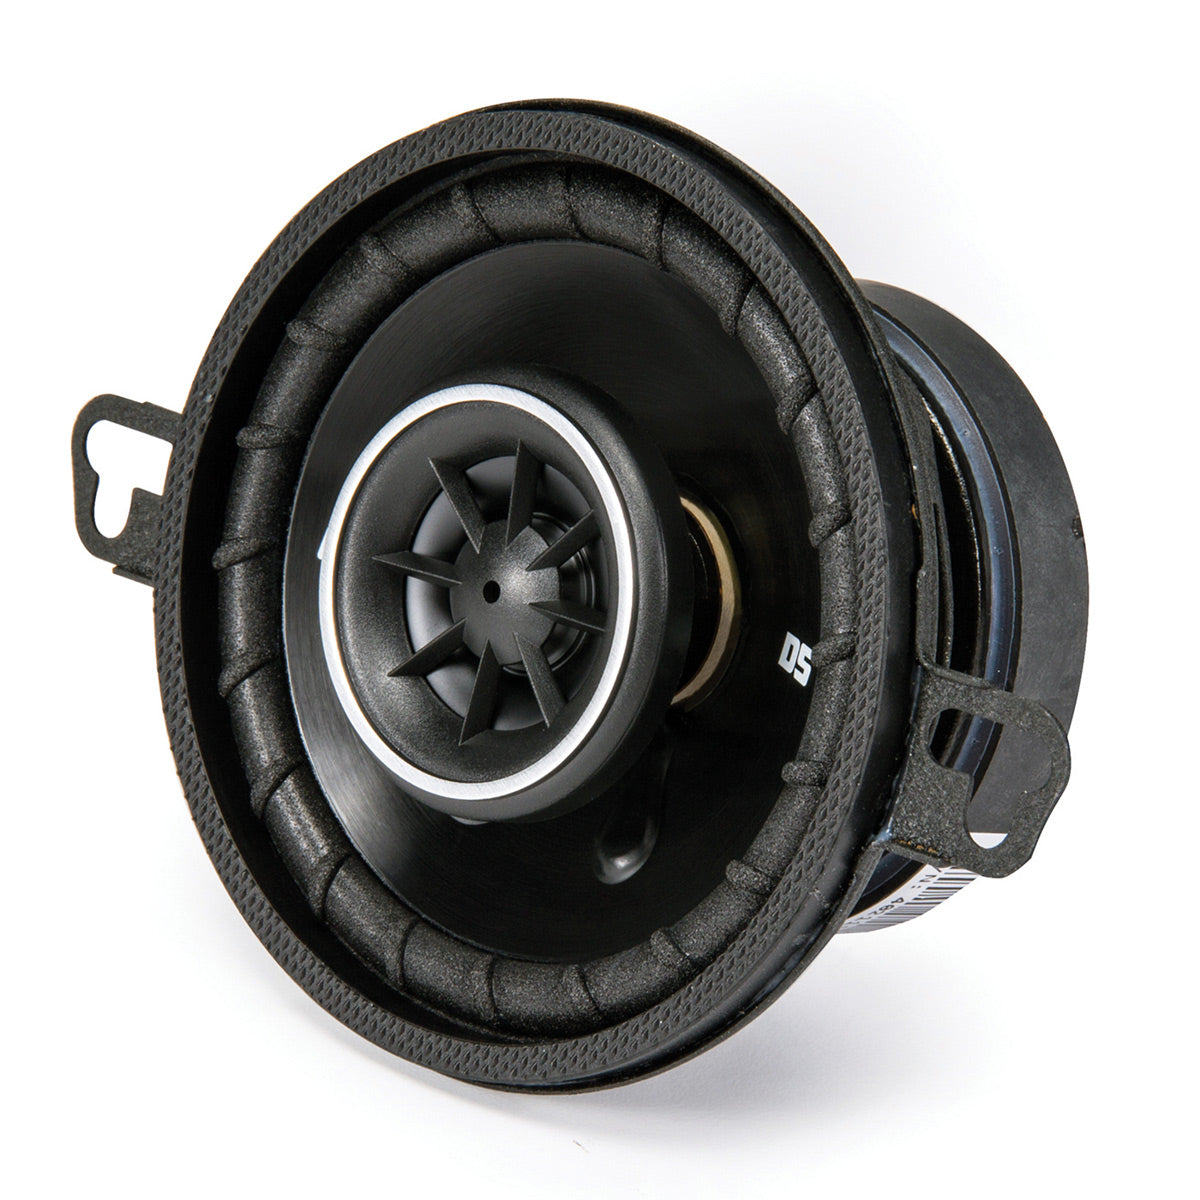 Kicker DSC350 DS Series 3.5" 4-Ohm Coaxial Speaker